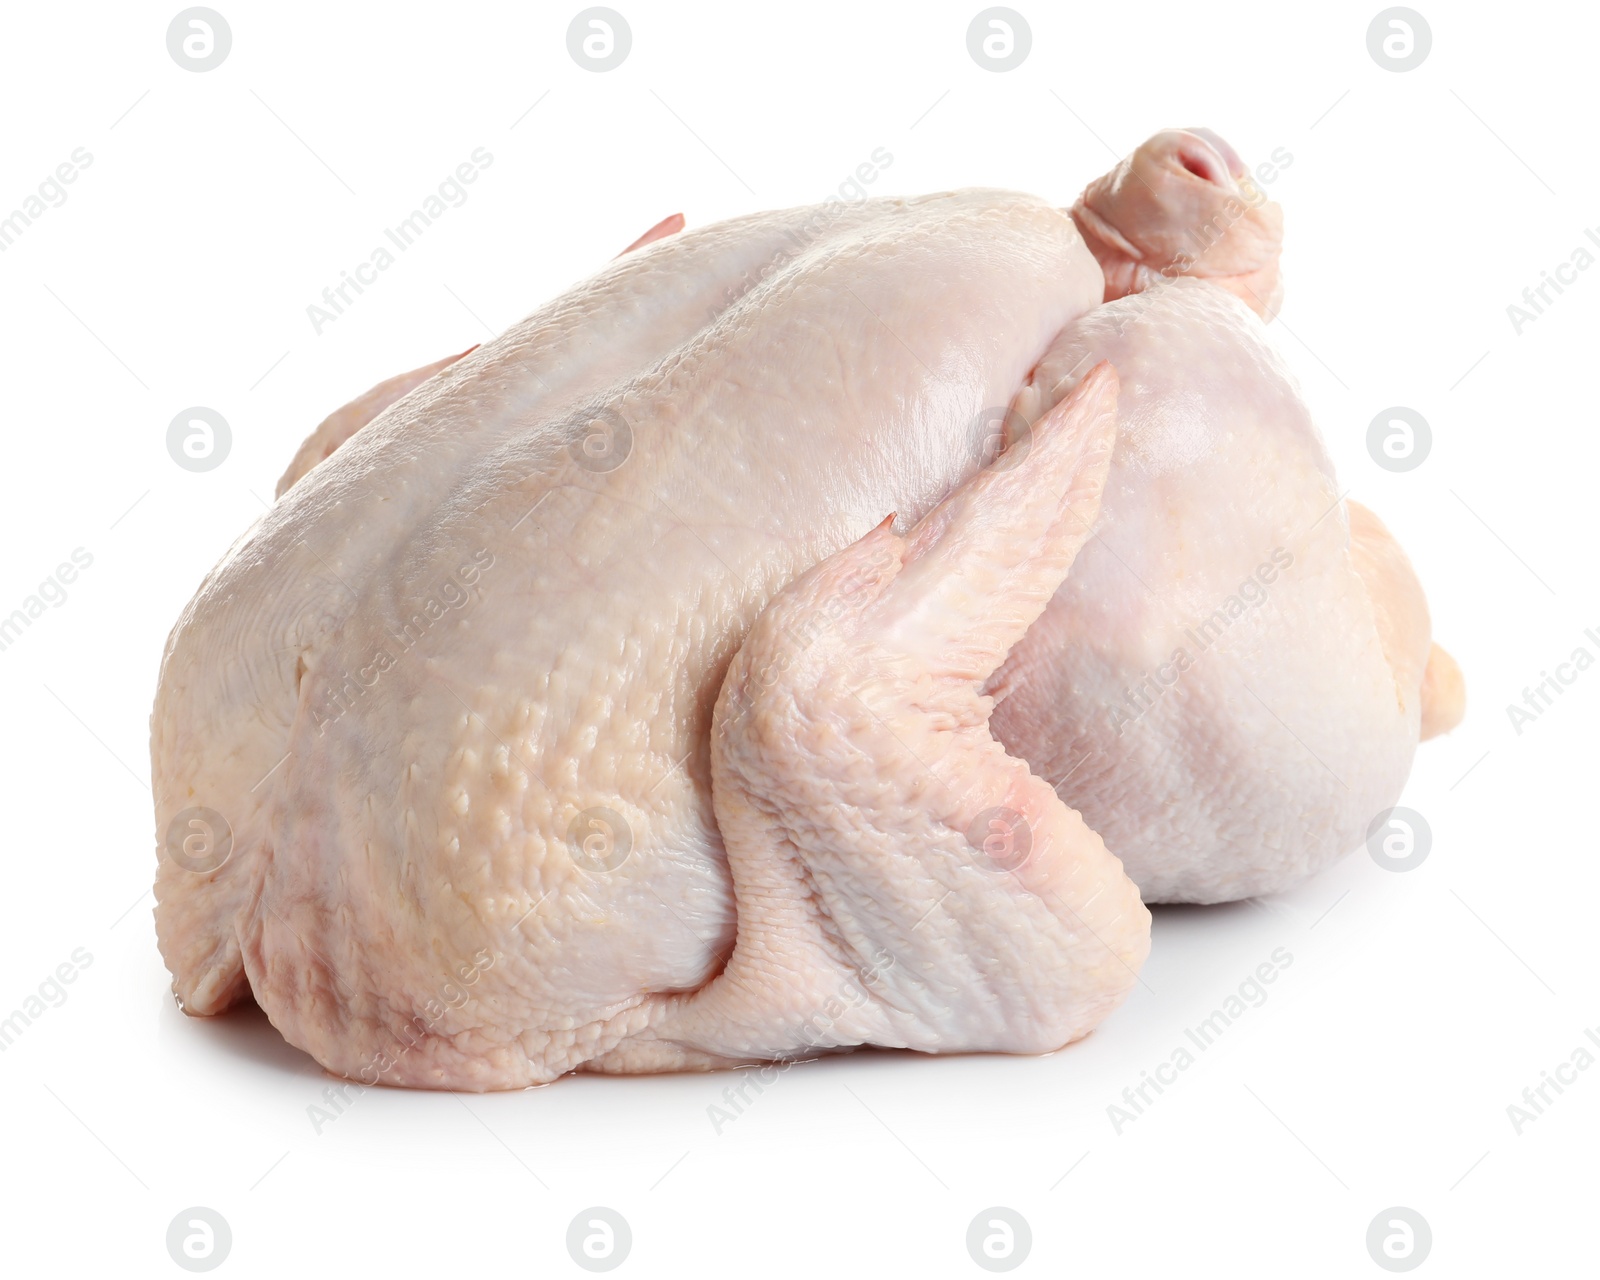 Photo of Fresh raw whole turkey on white background